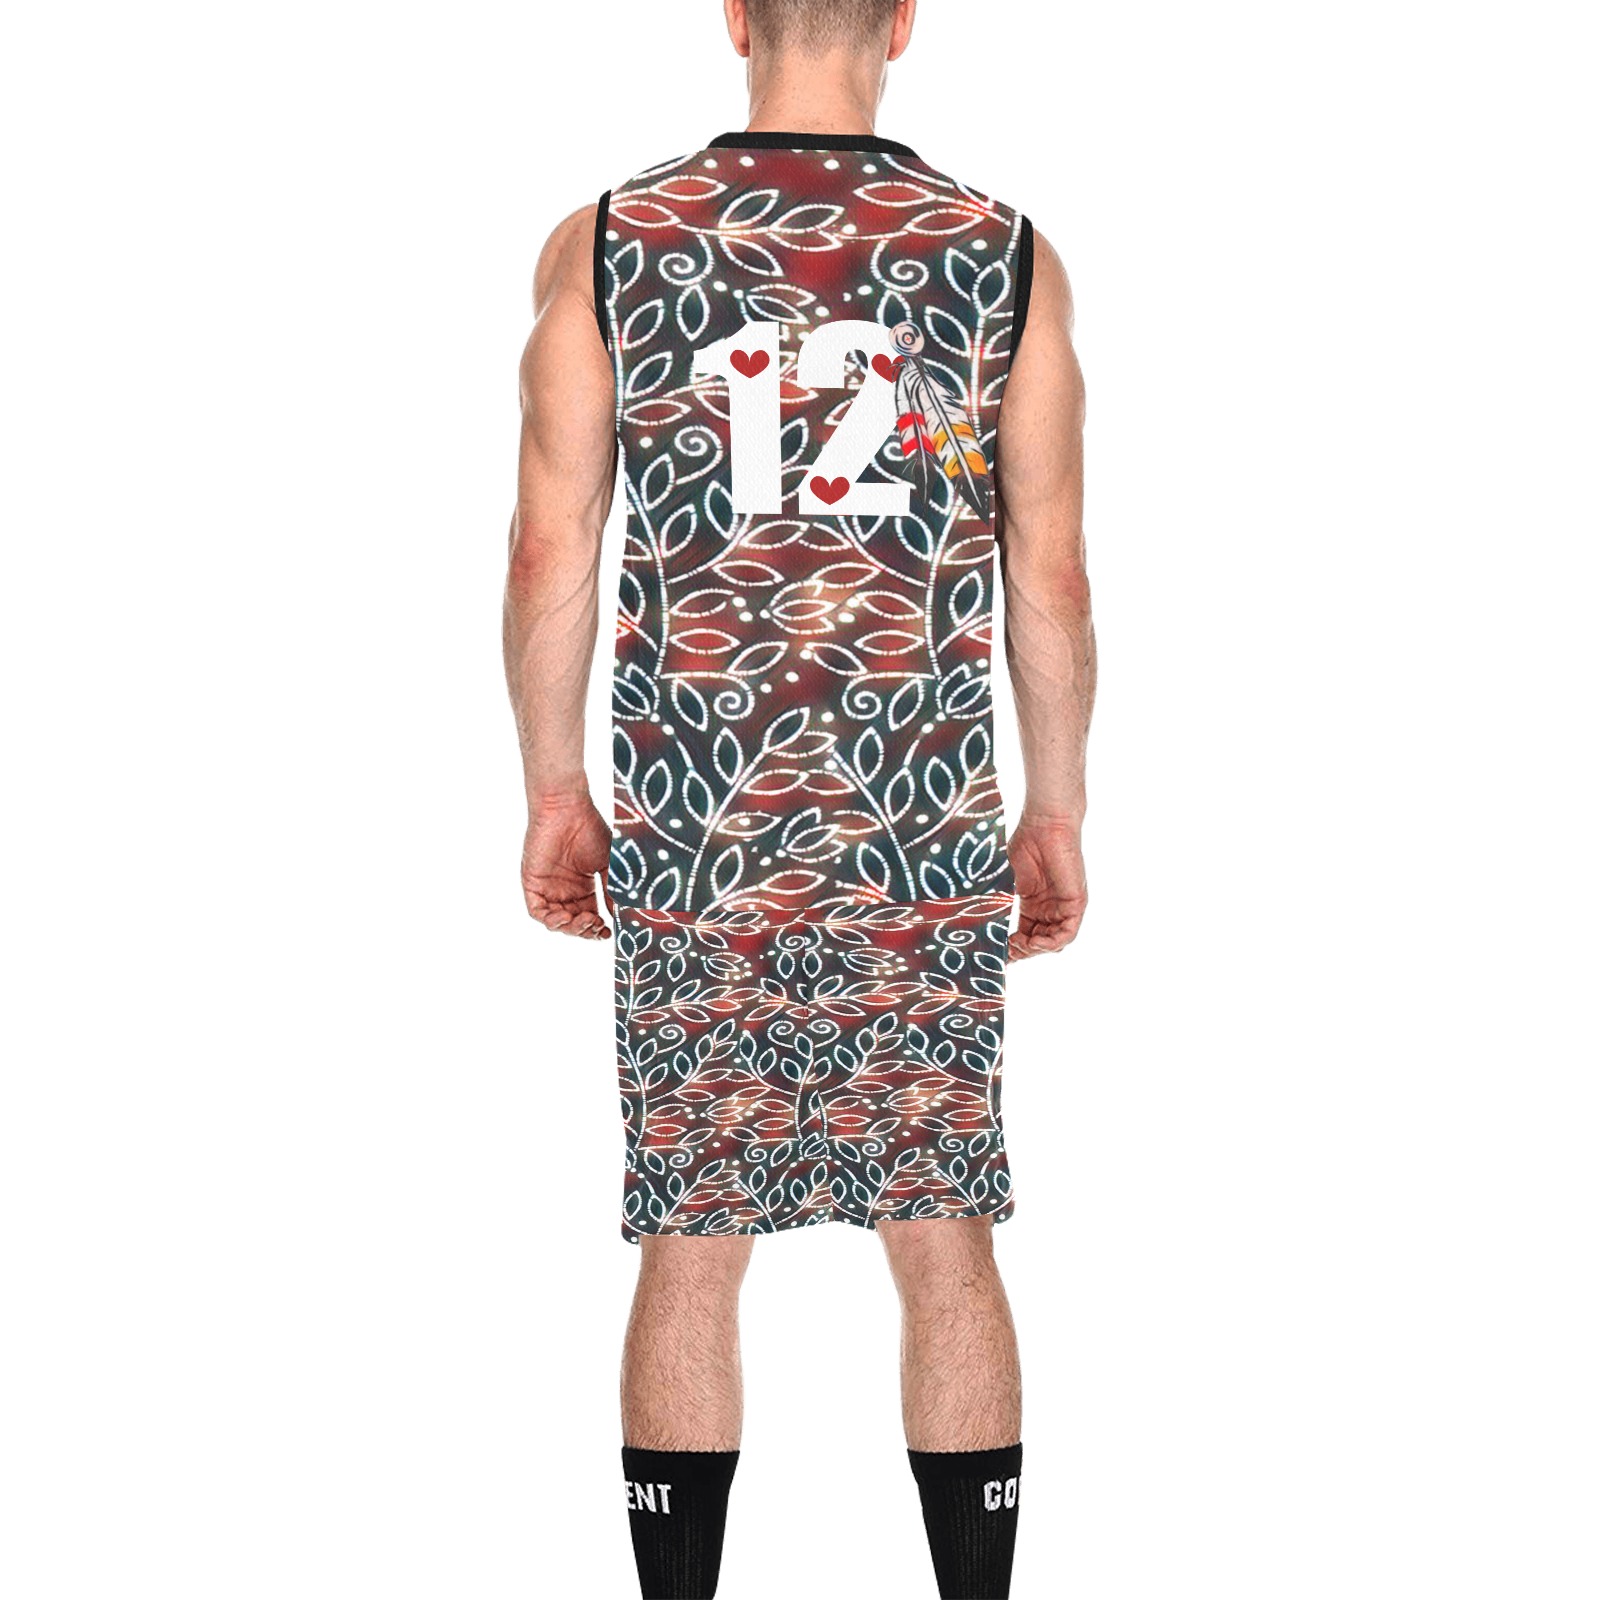 MMIW 12 All Over Print Basketball Uniform